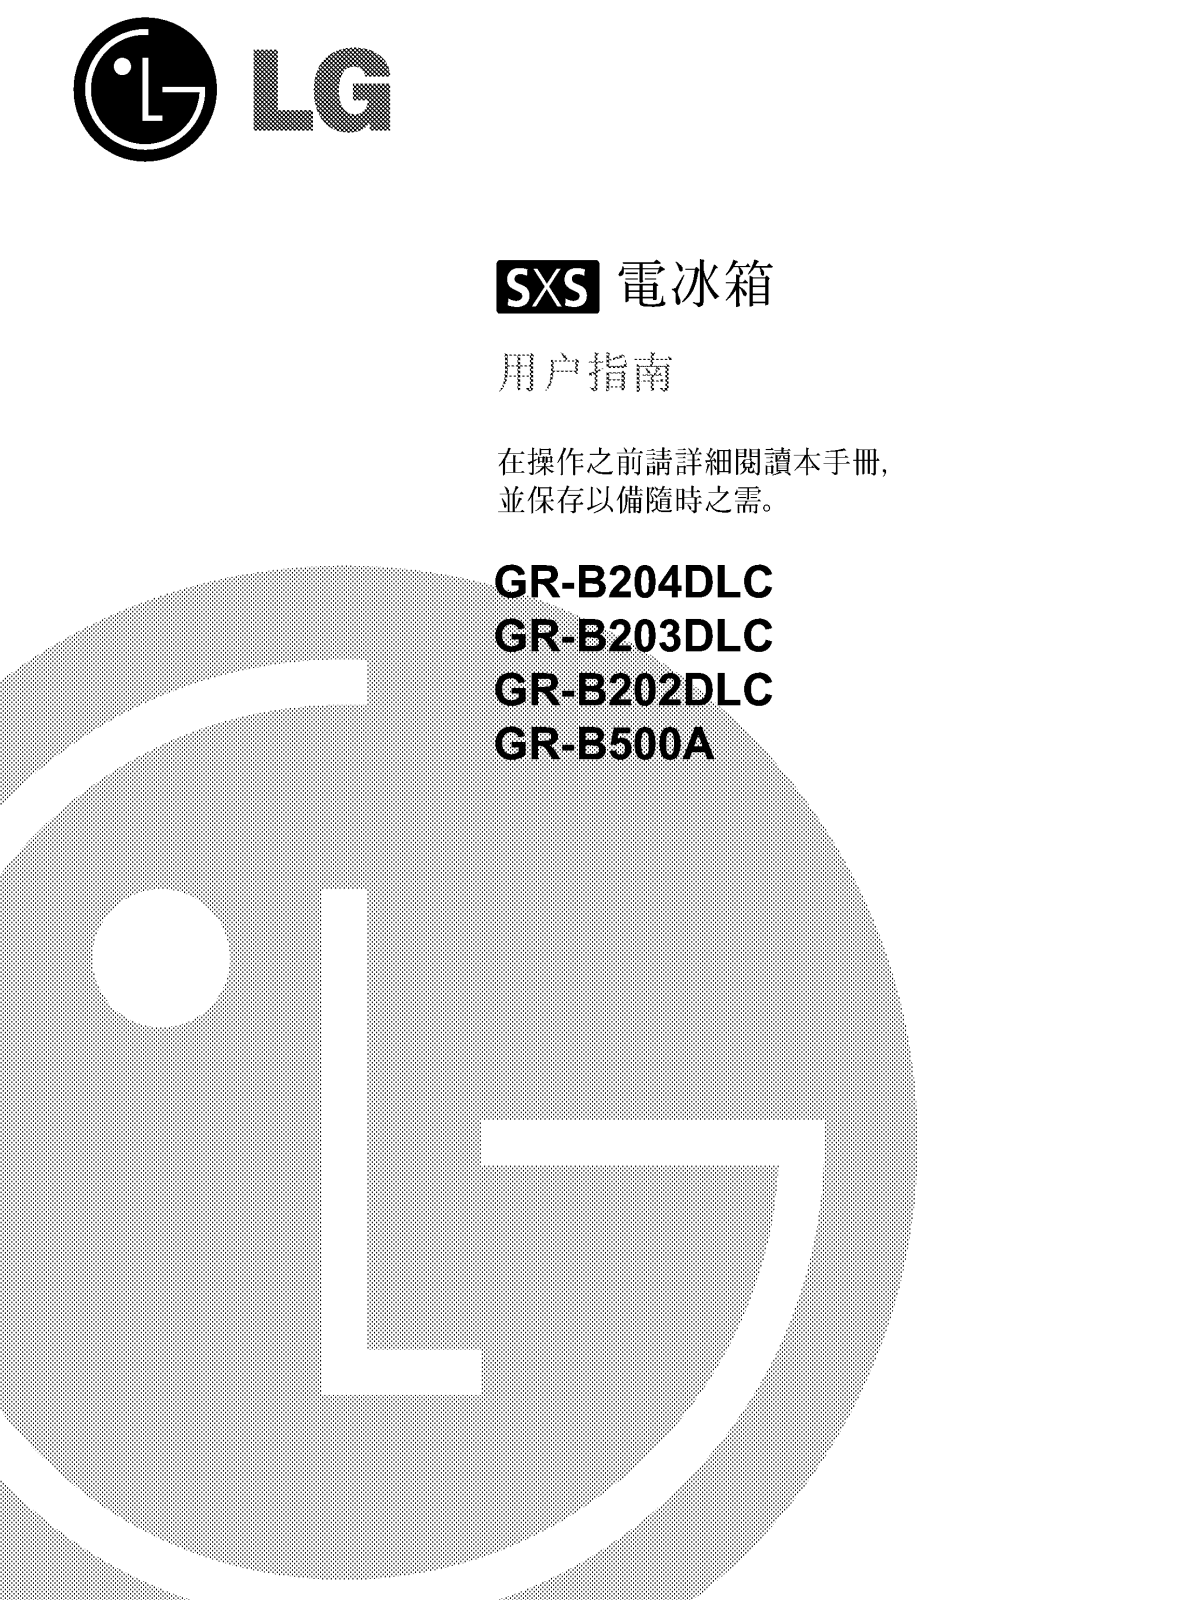 Lg GR-B203DLC, GR-B204DLC, GR-B202DLC, GR-B500A User Manual